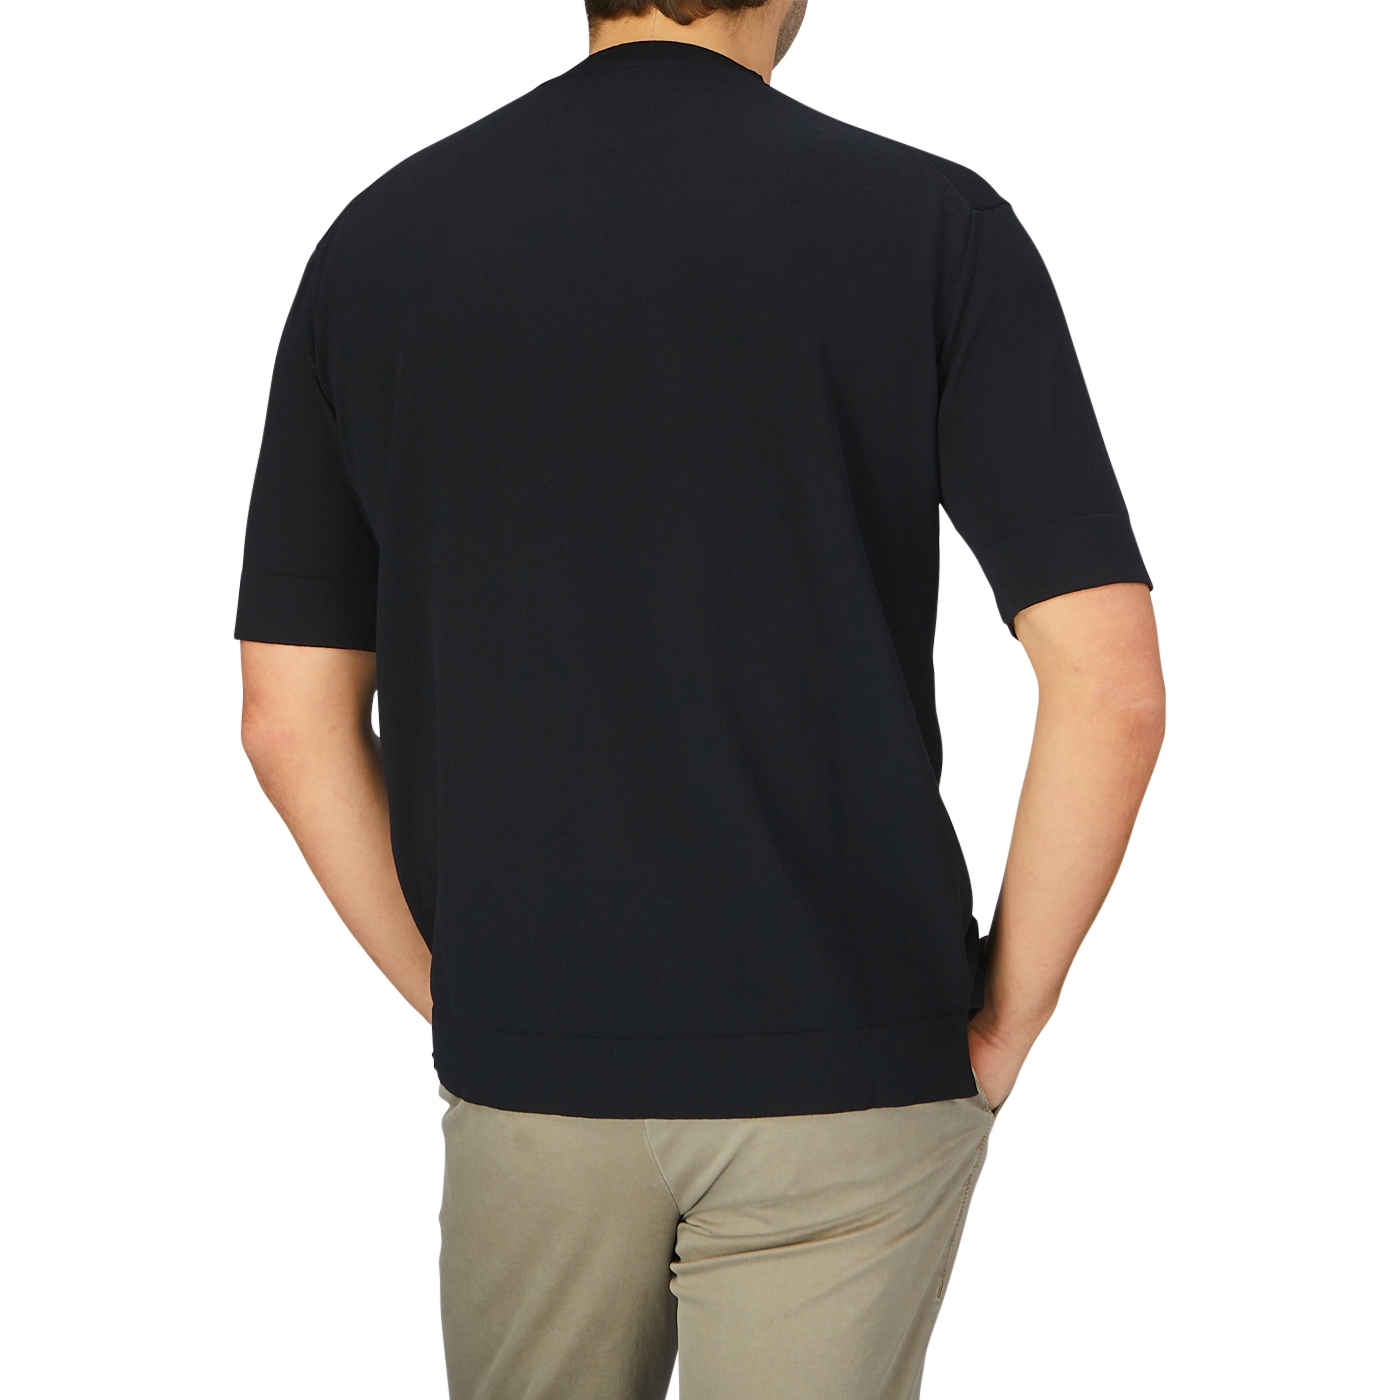 A man in a Filippo de Laurentiis Black Crepe Cotton Oversized T-Shirt.